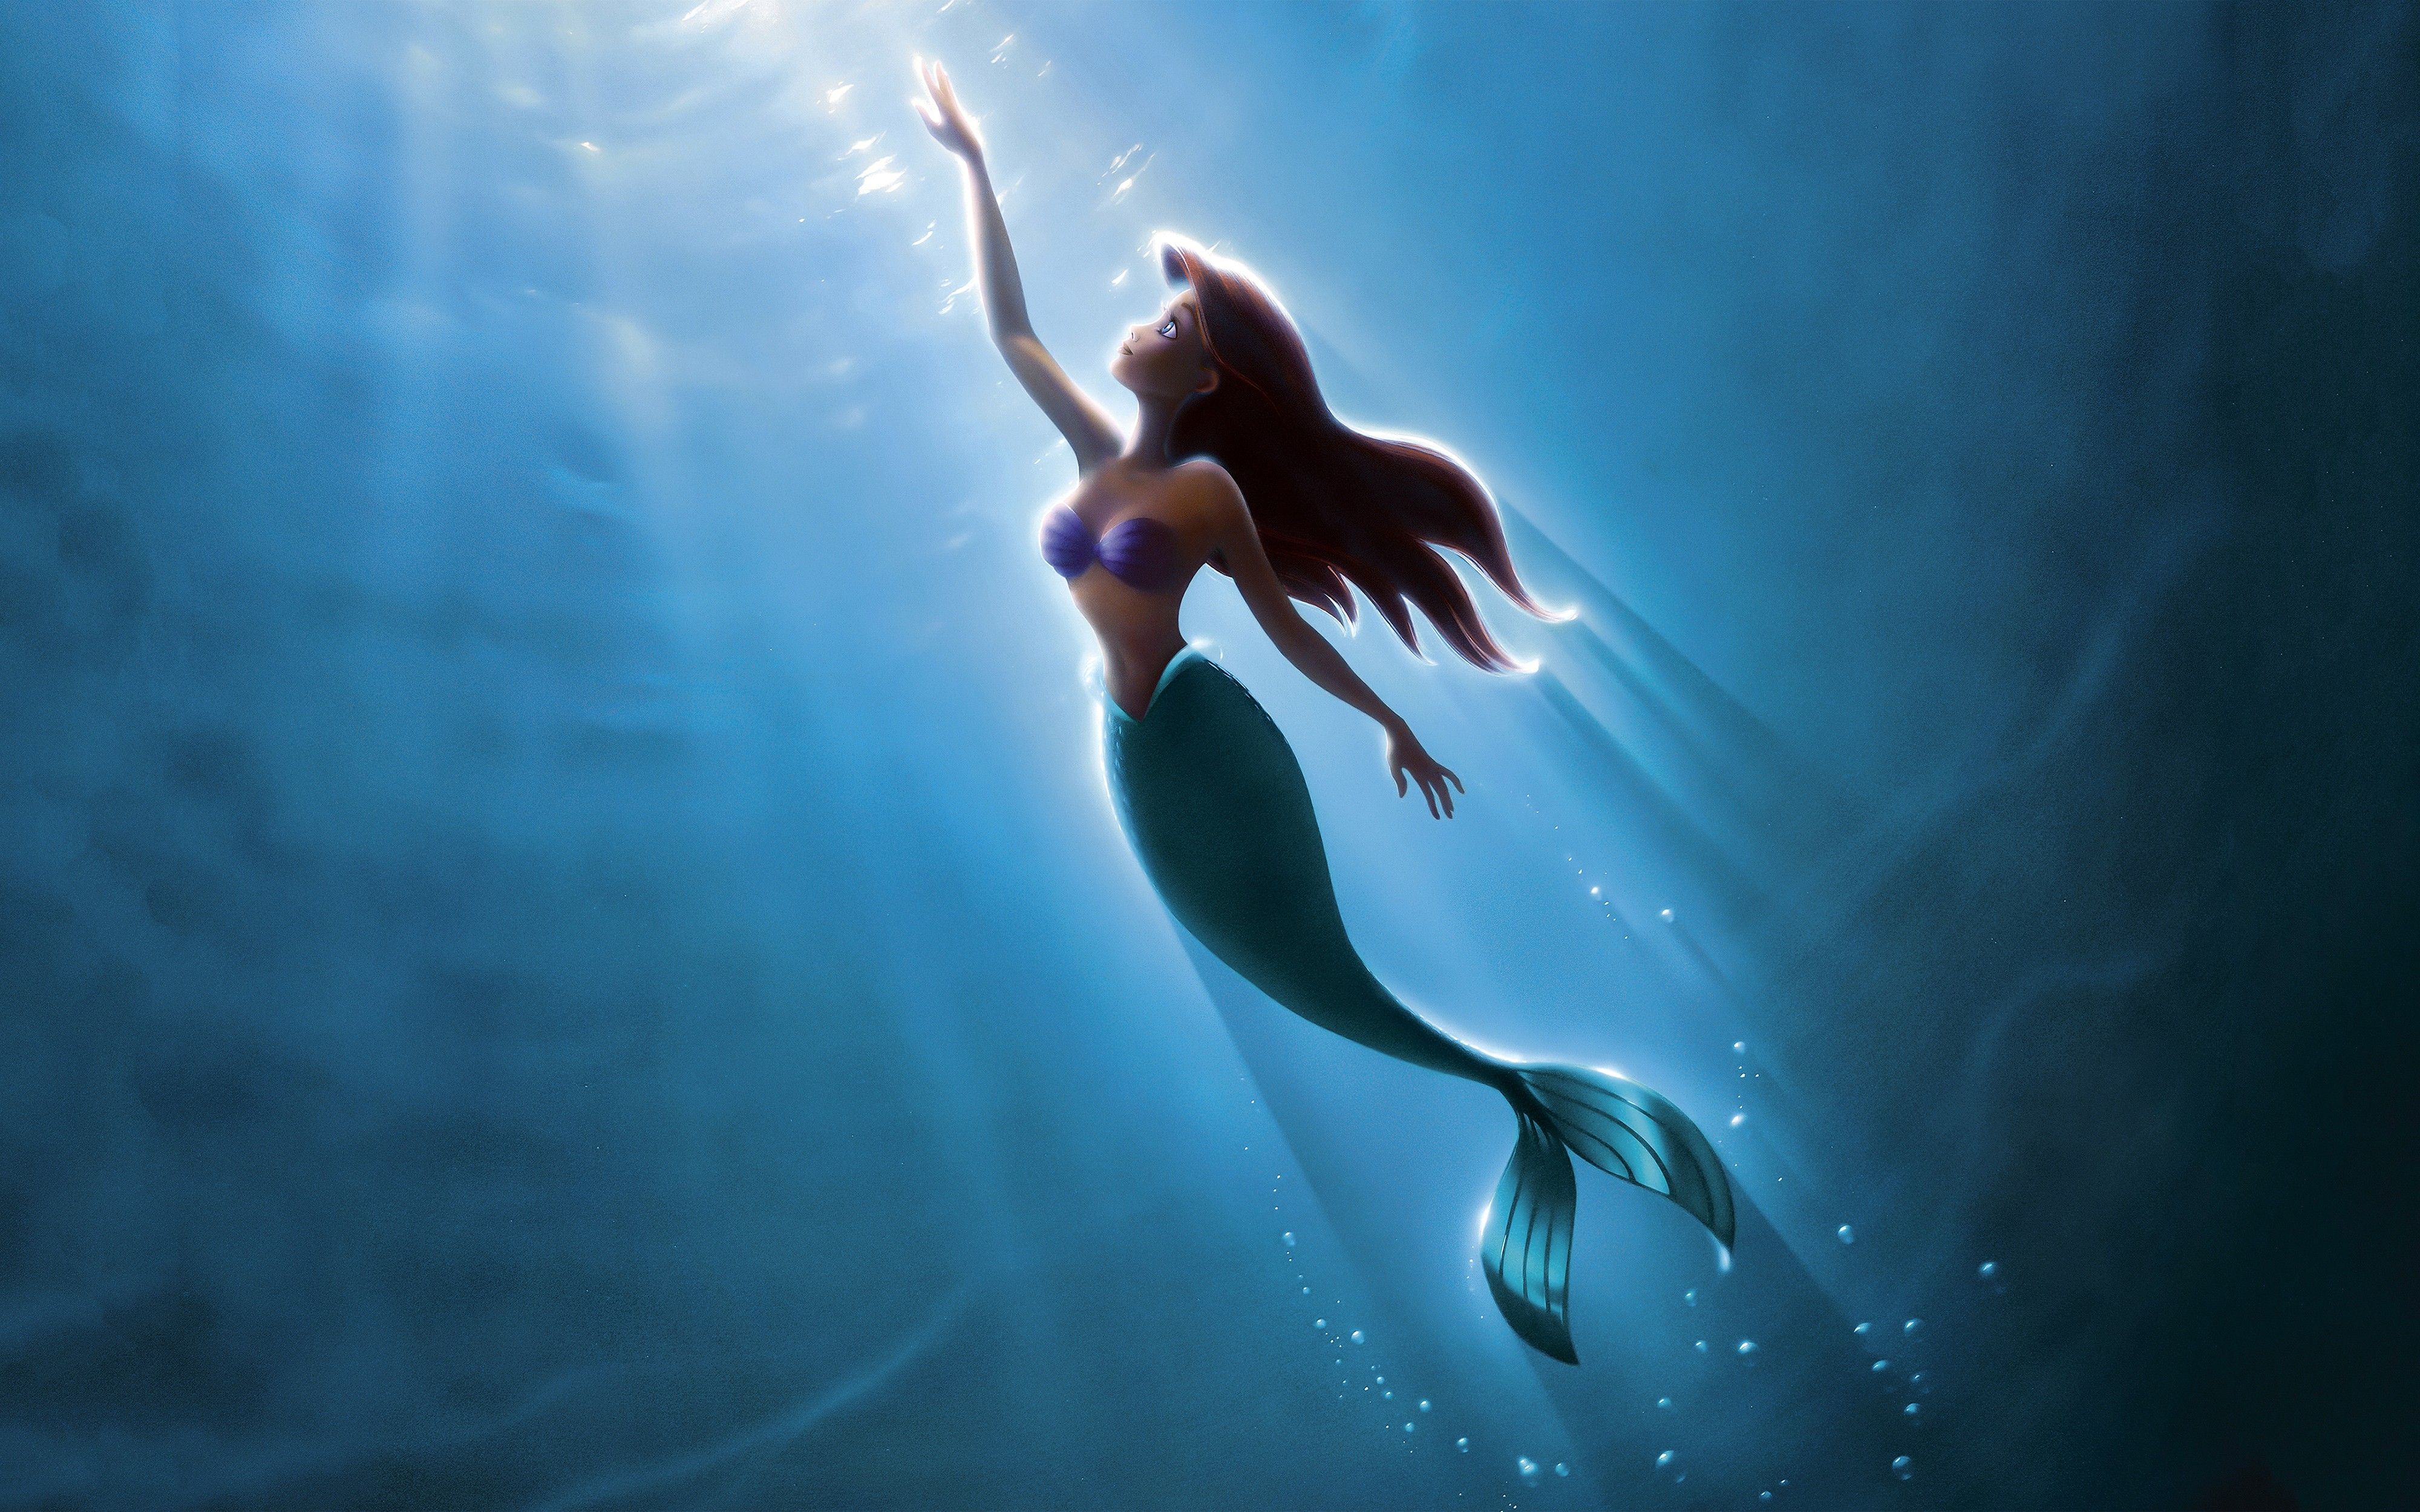 The little mermaid is swimming in a blue ocean - Ariel, mermaid